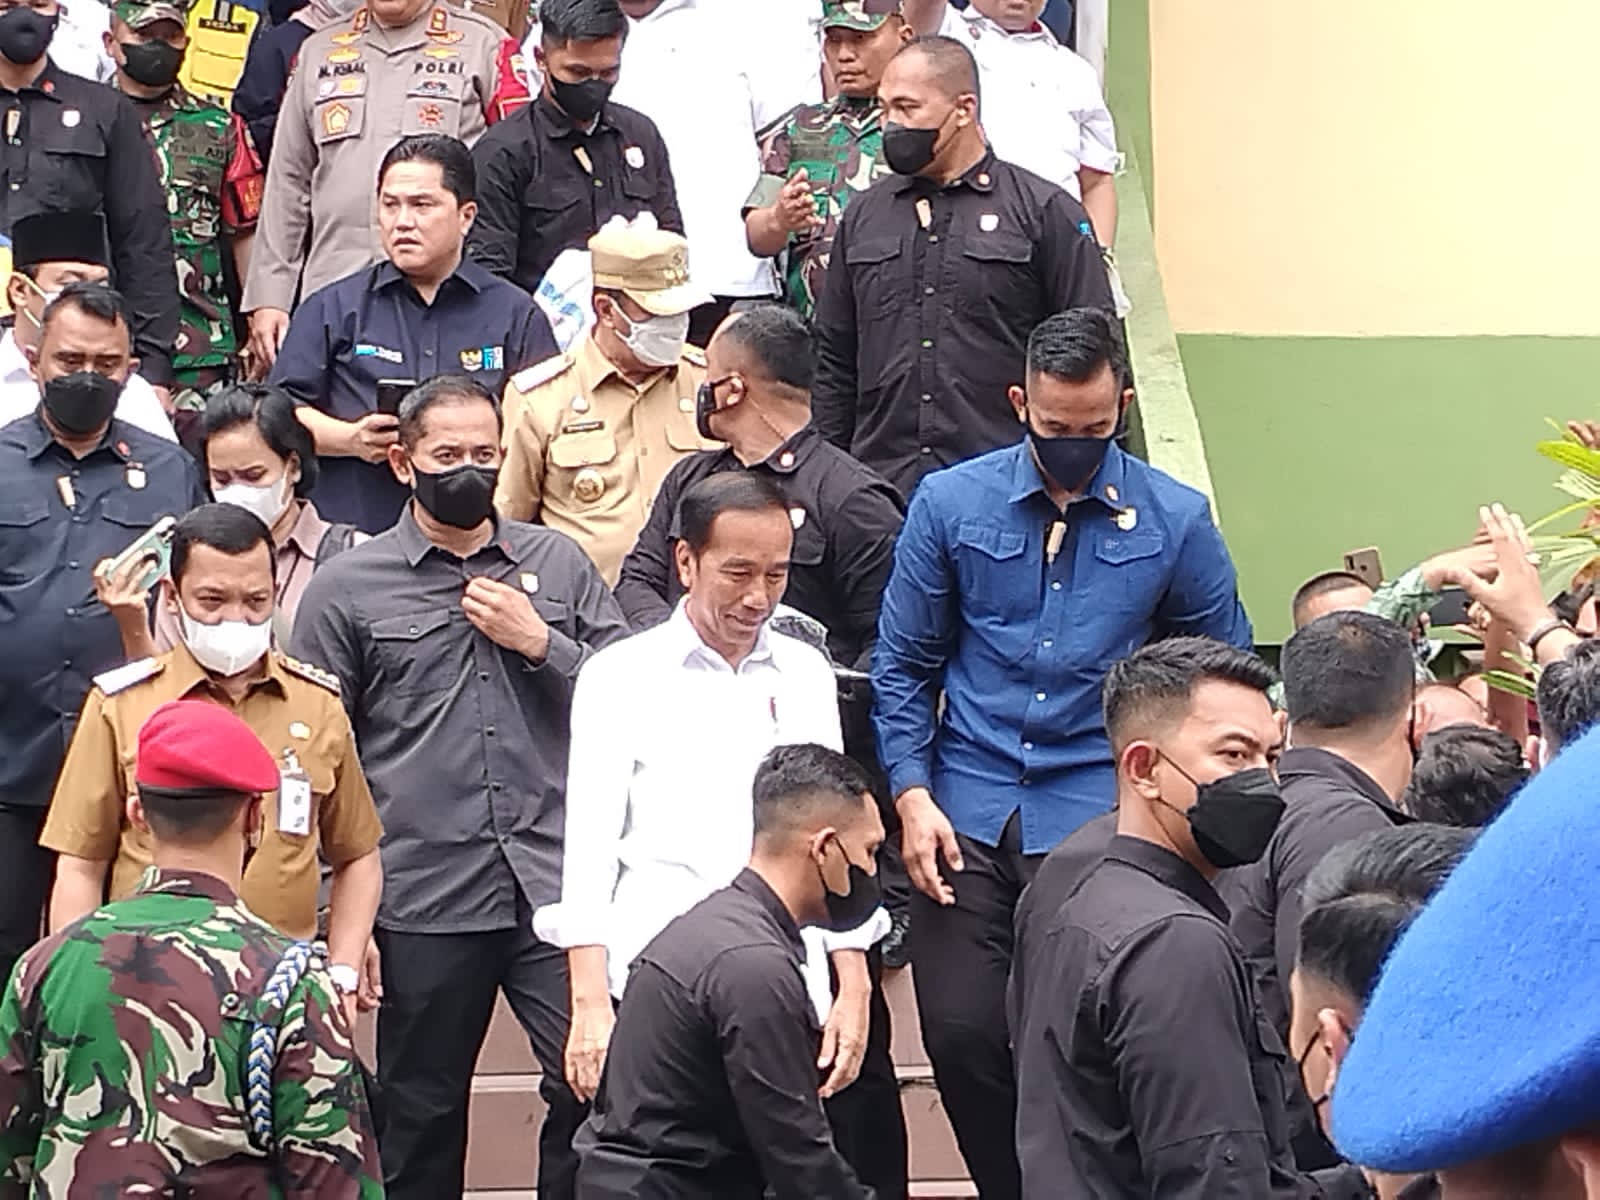 Kunker Presiden ke Riau Disambut Antusias Rakyat